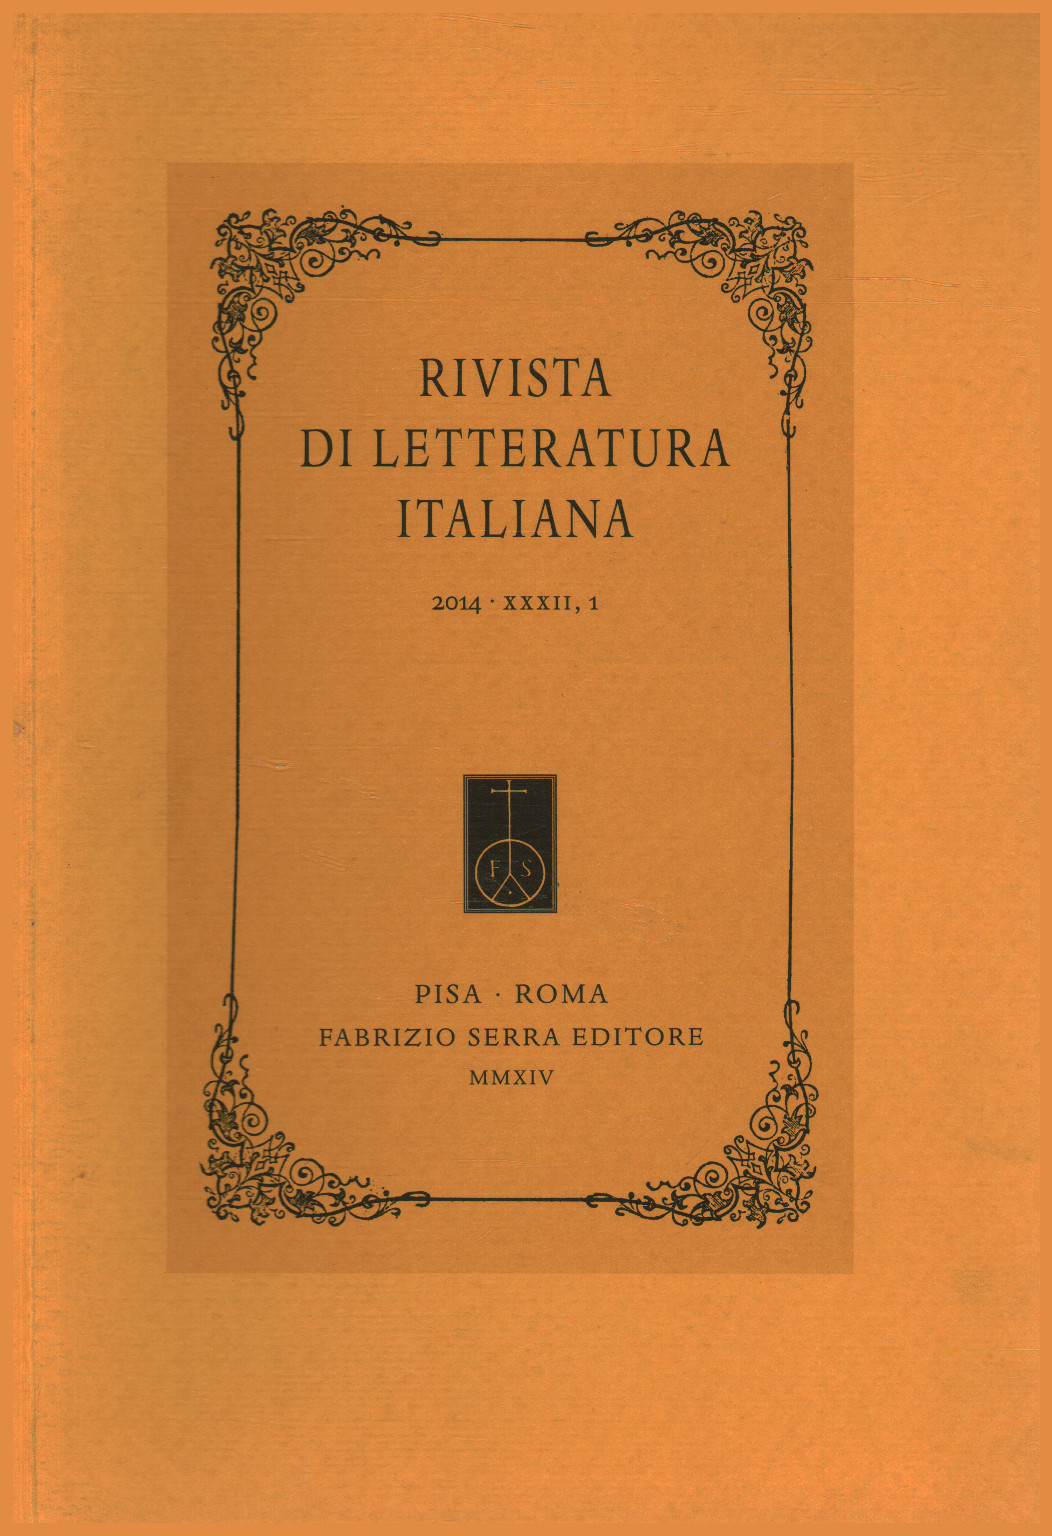 Rivista di letteratura italiana 2014 XXXII 1, s.a.